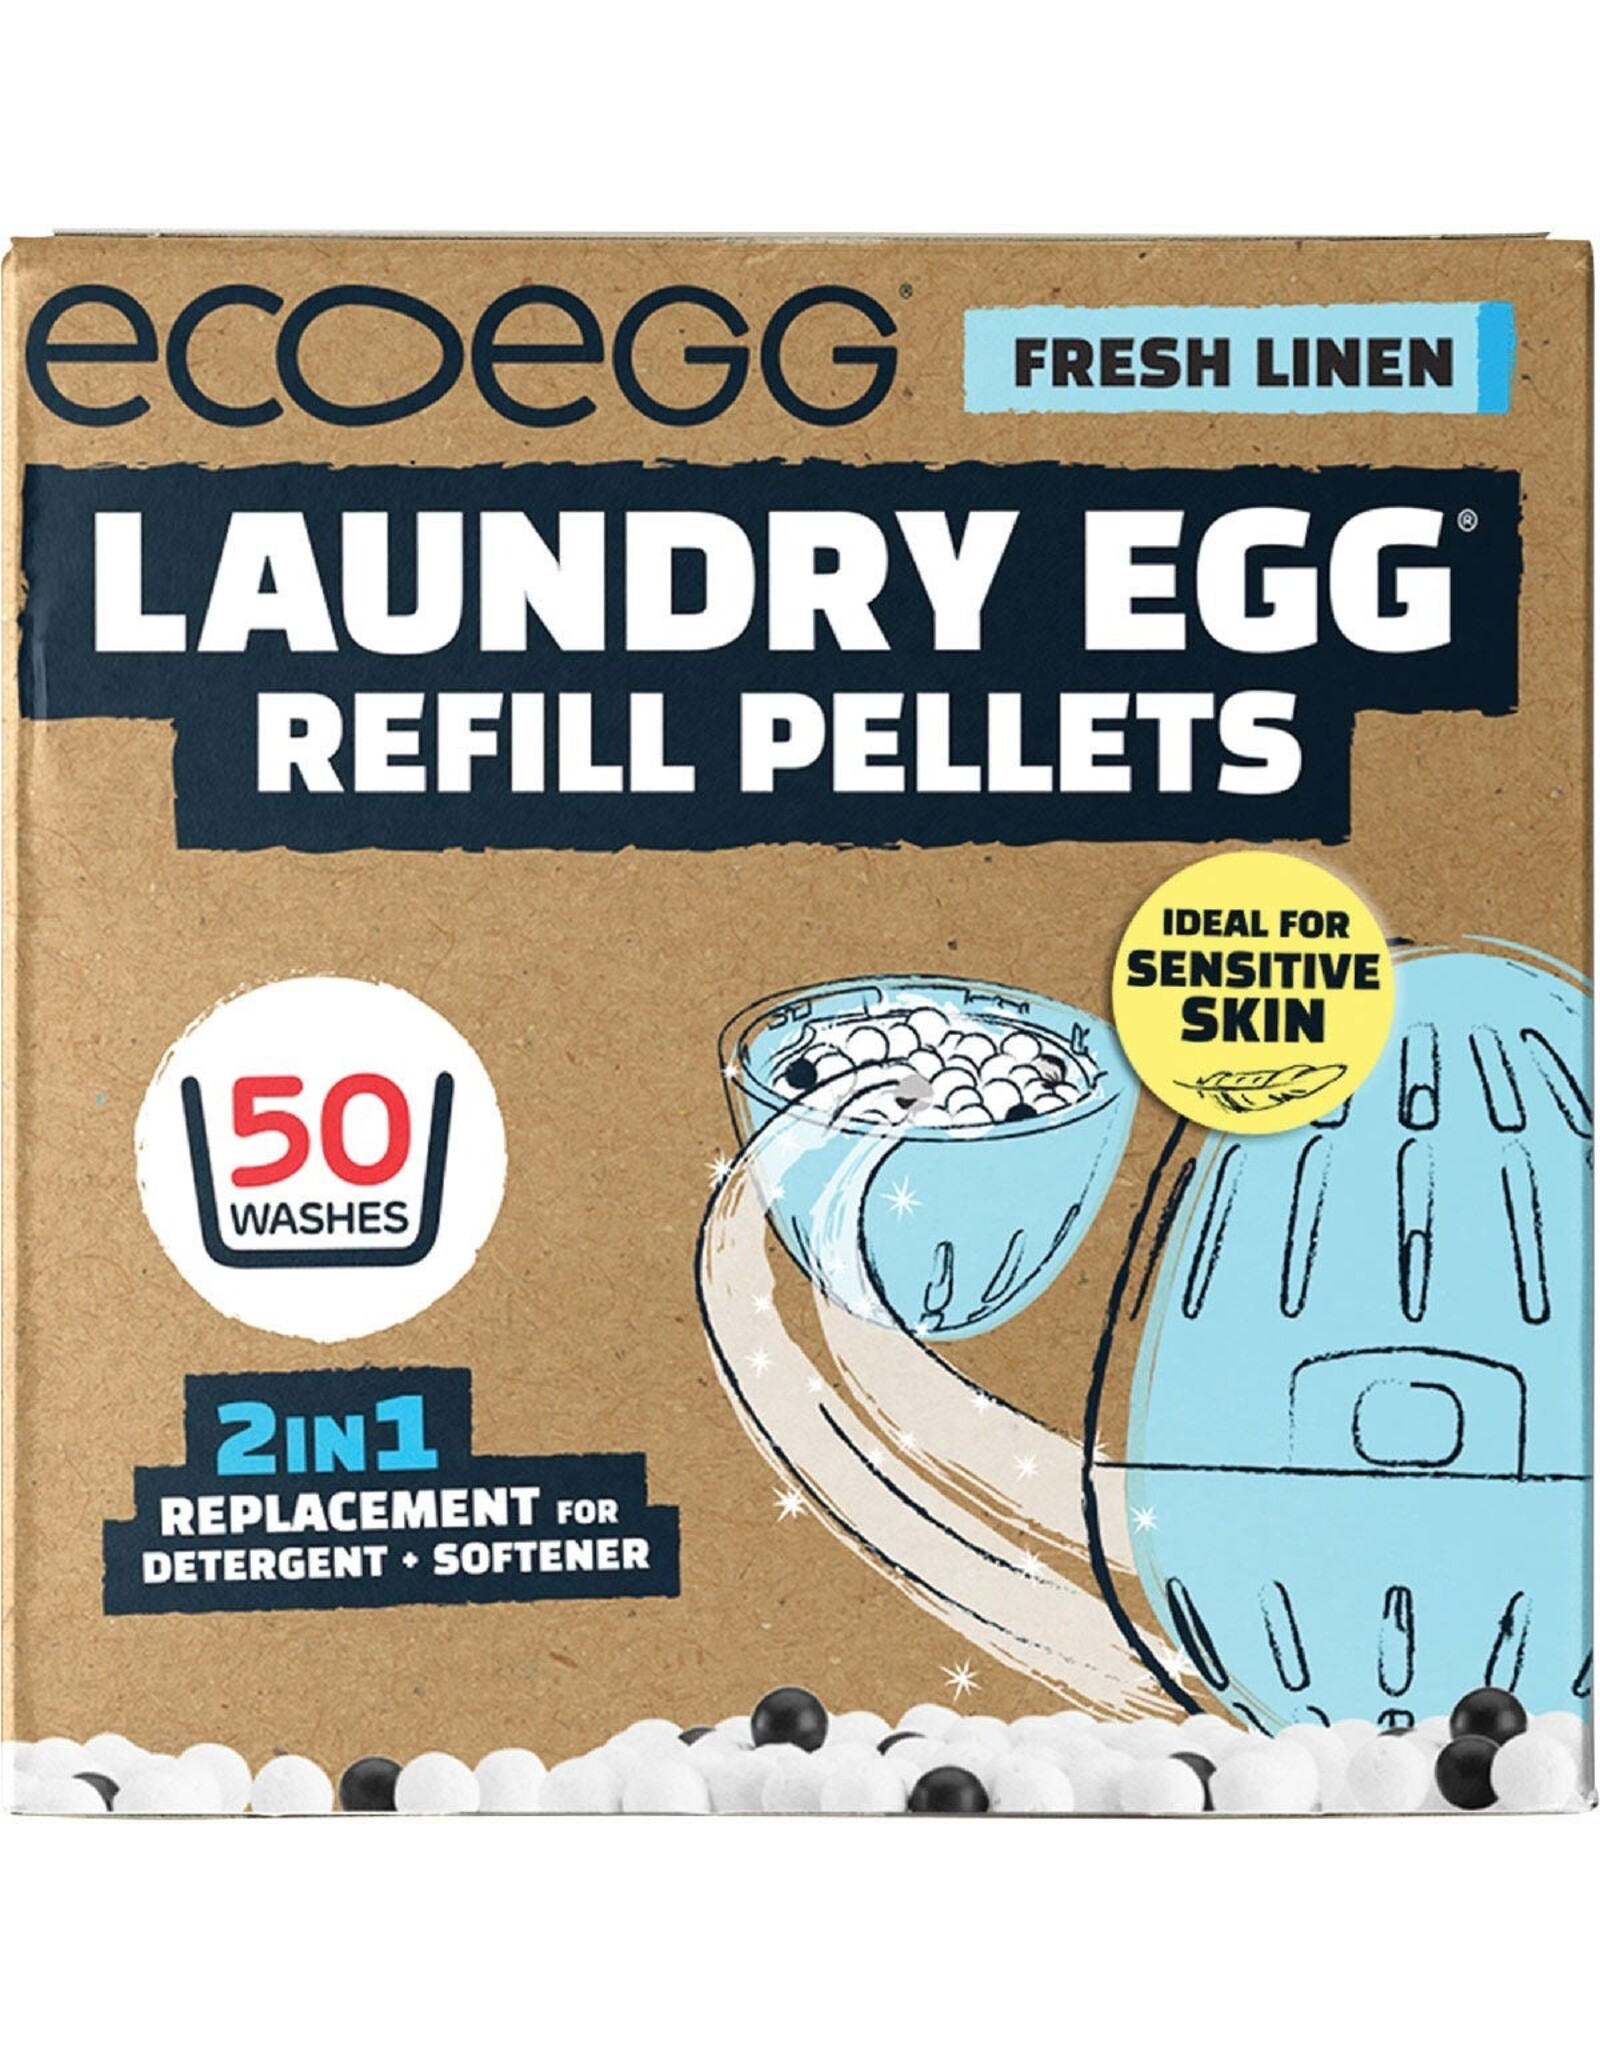 Ecoegg Laundry Egg Refill Pellets 50 Washes Fresh Linen